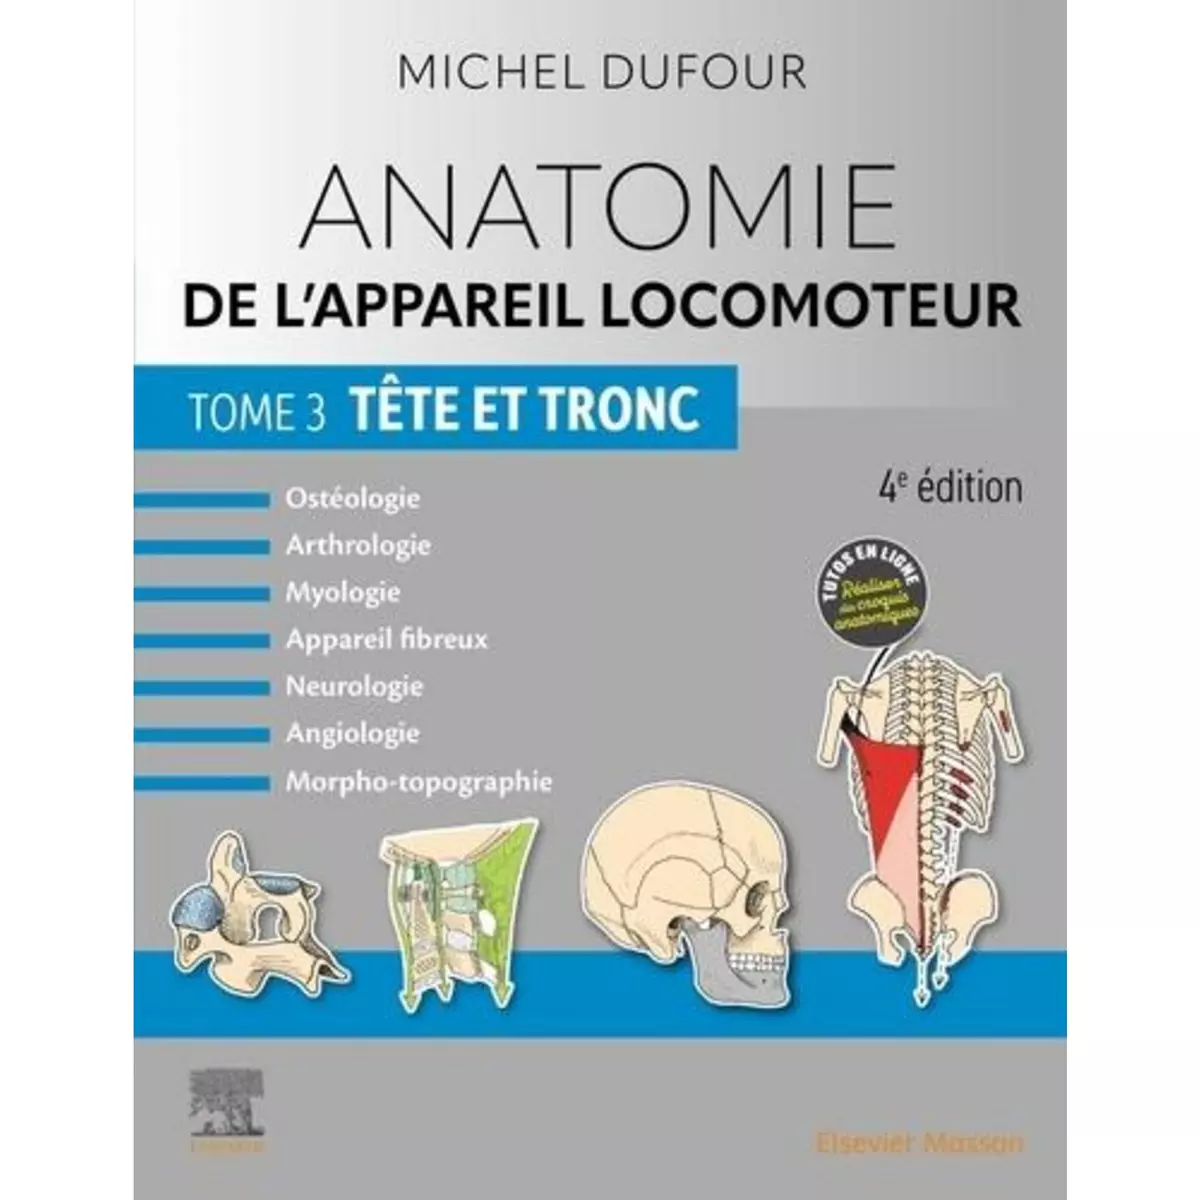  ANATOMIE DE L'APPAREIL LOCOMOTEUR. TOME 3, TETE ET TRONC, 4E EDITION, Dufour Michel